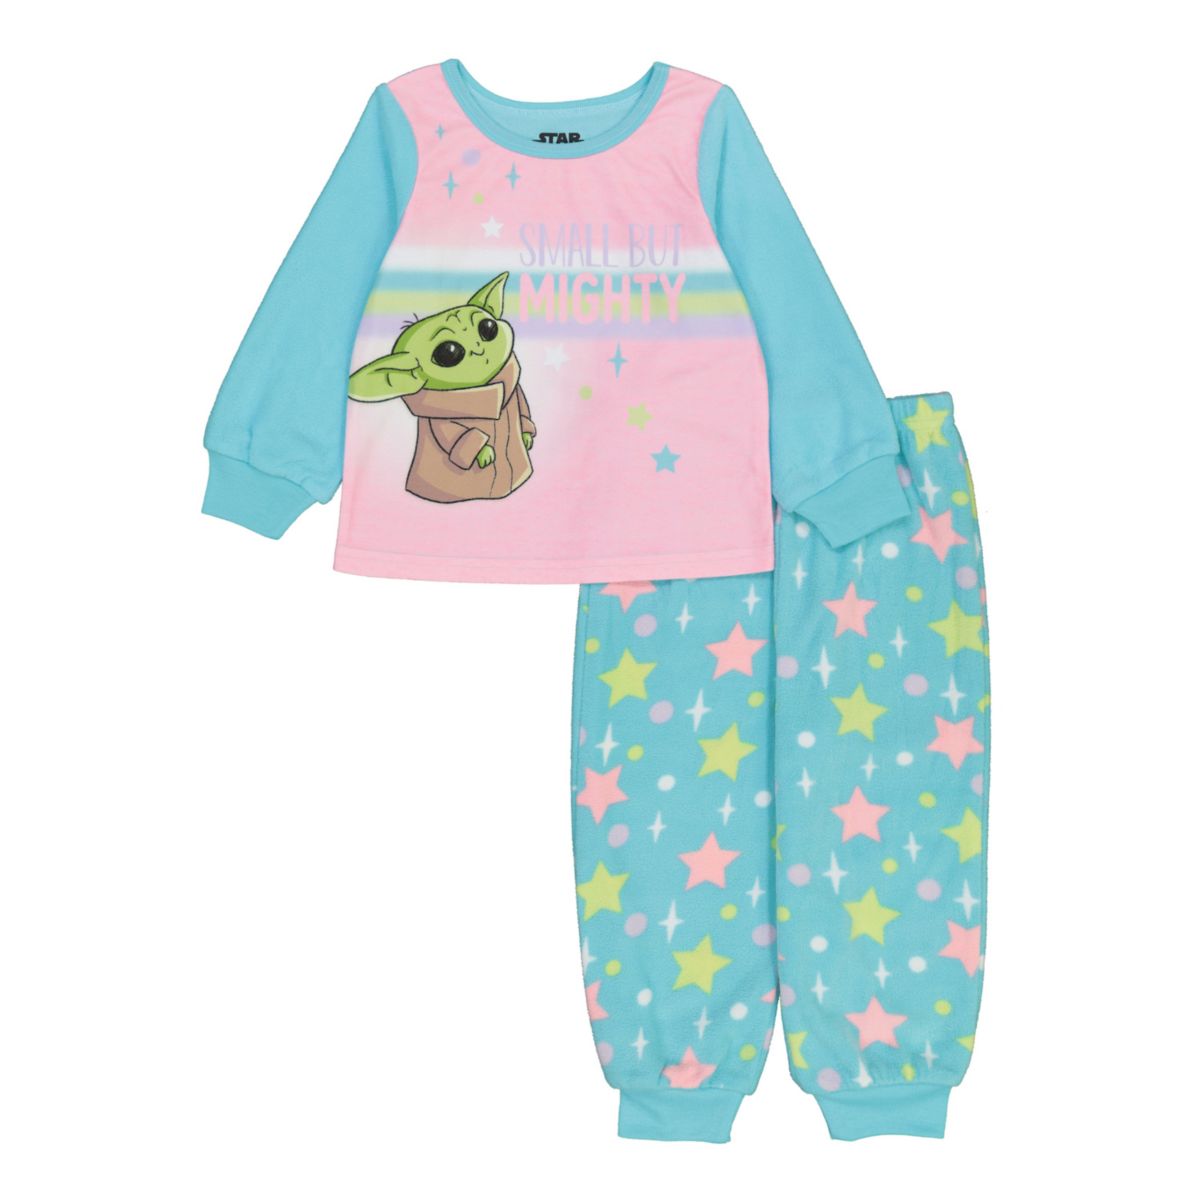 Маленькая, но крепкая пижама для маленьких девочек Мандалорианец Дитя, также известный как Бэби Йода Licensed Character